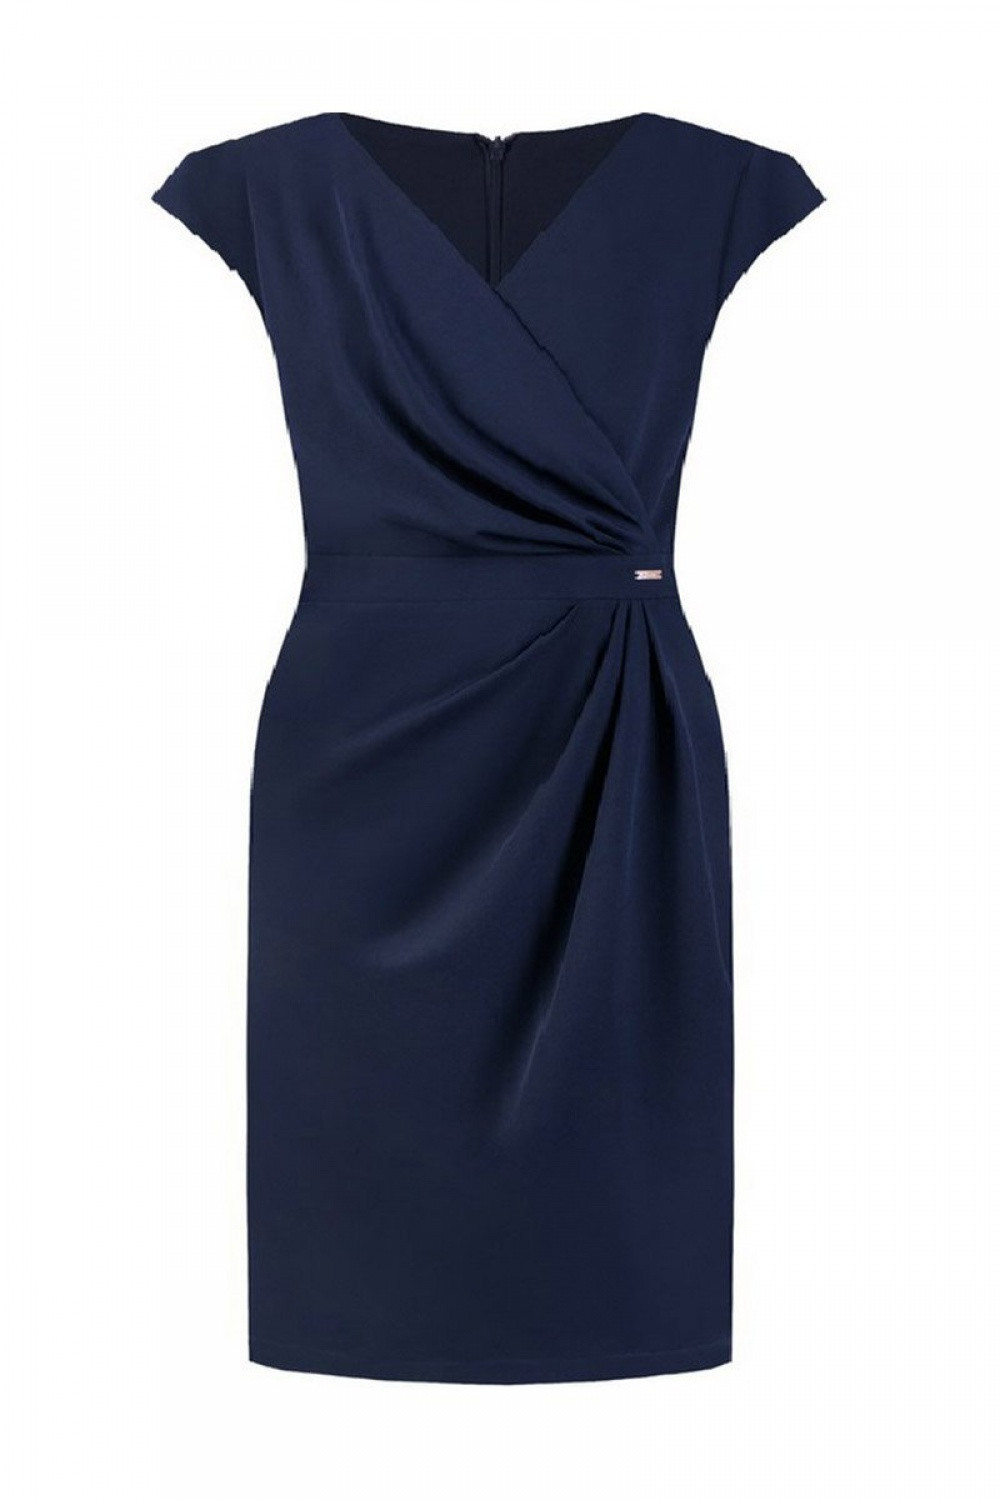 Dámské šaty model 108514 - Jersa 50 tmavě modrá